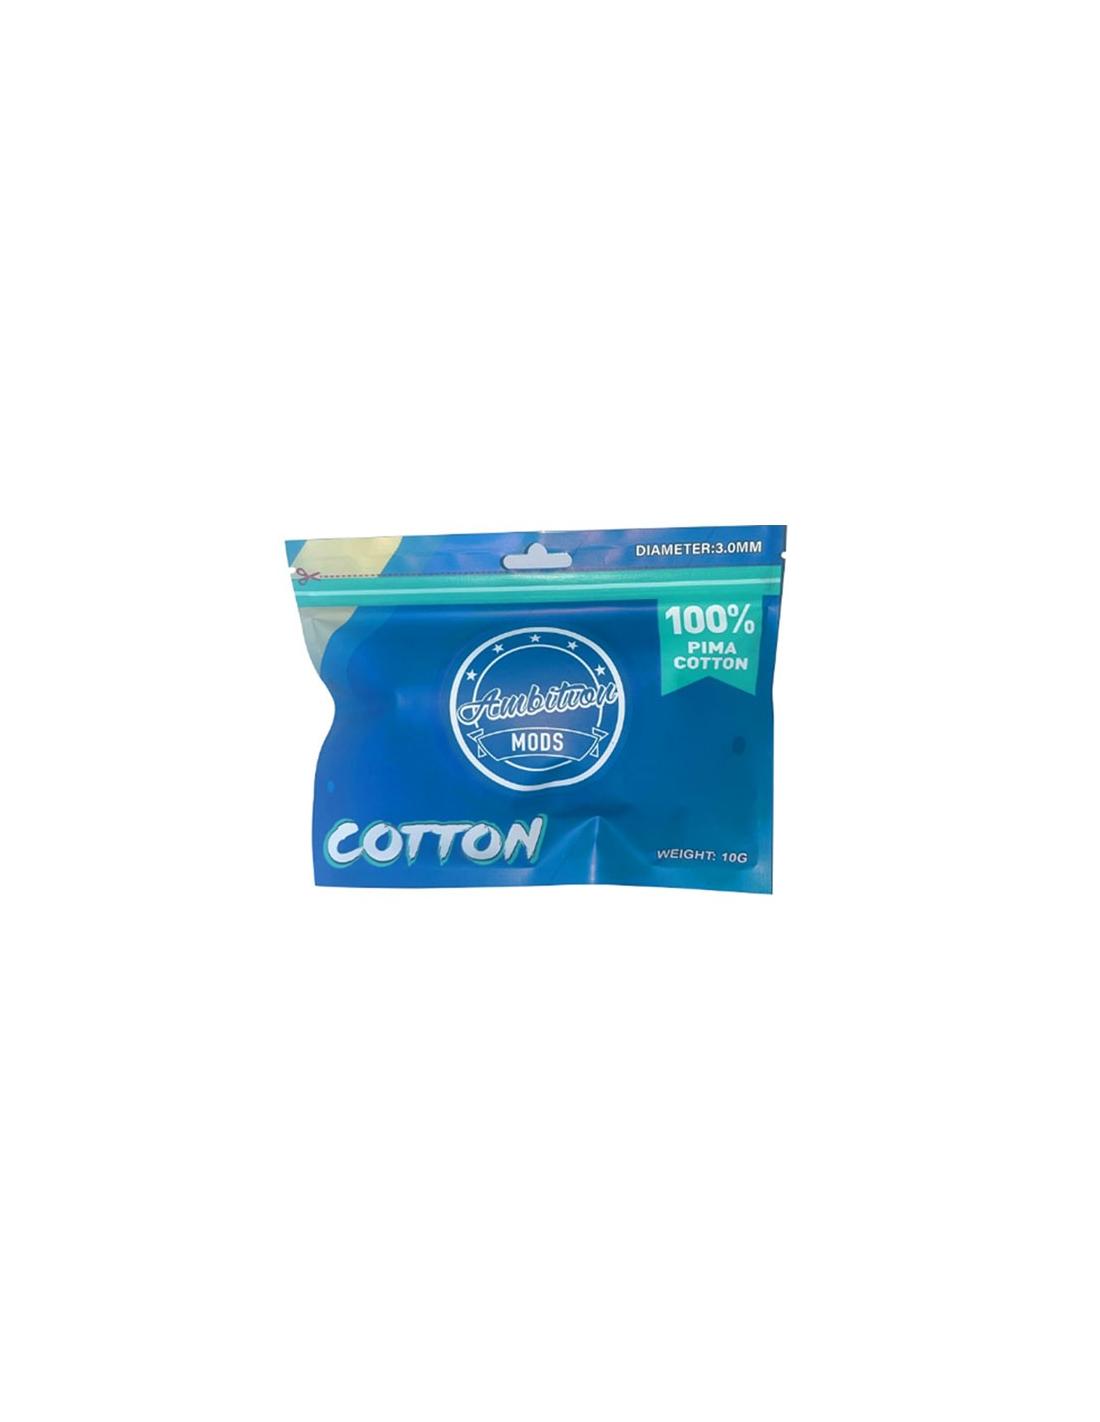 Ambition Mods Pima Cotton Cotone Organico 7mt